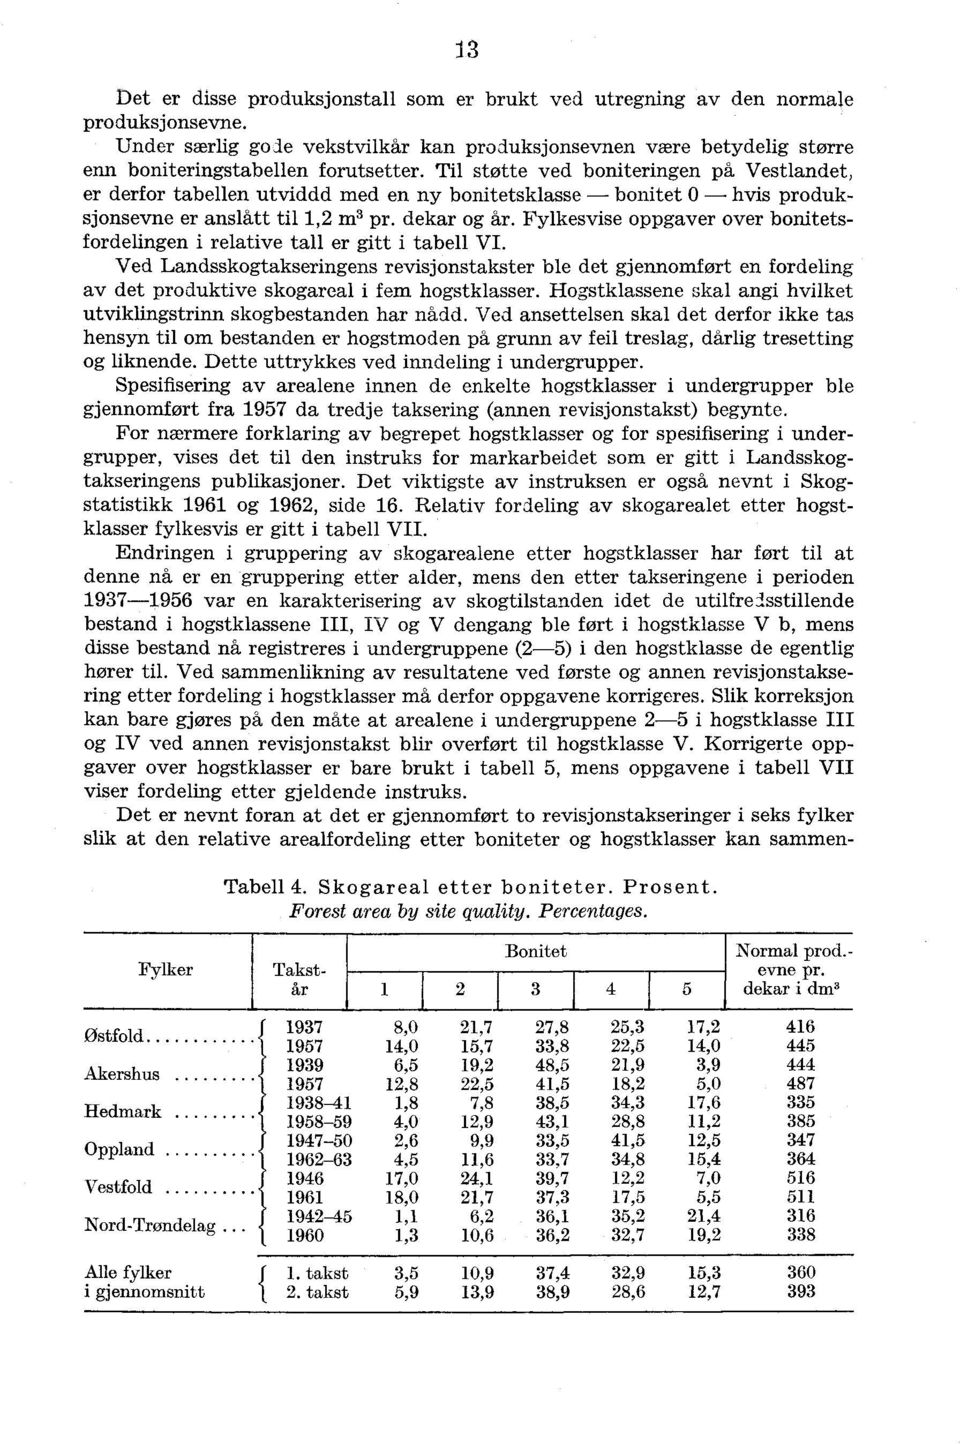 Fylkesvise oppgaver over bonitetsfordelingen i relative tall er gitt i tabell VI.